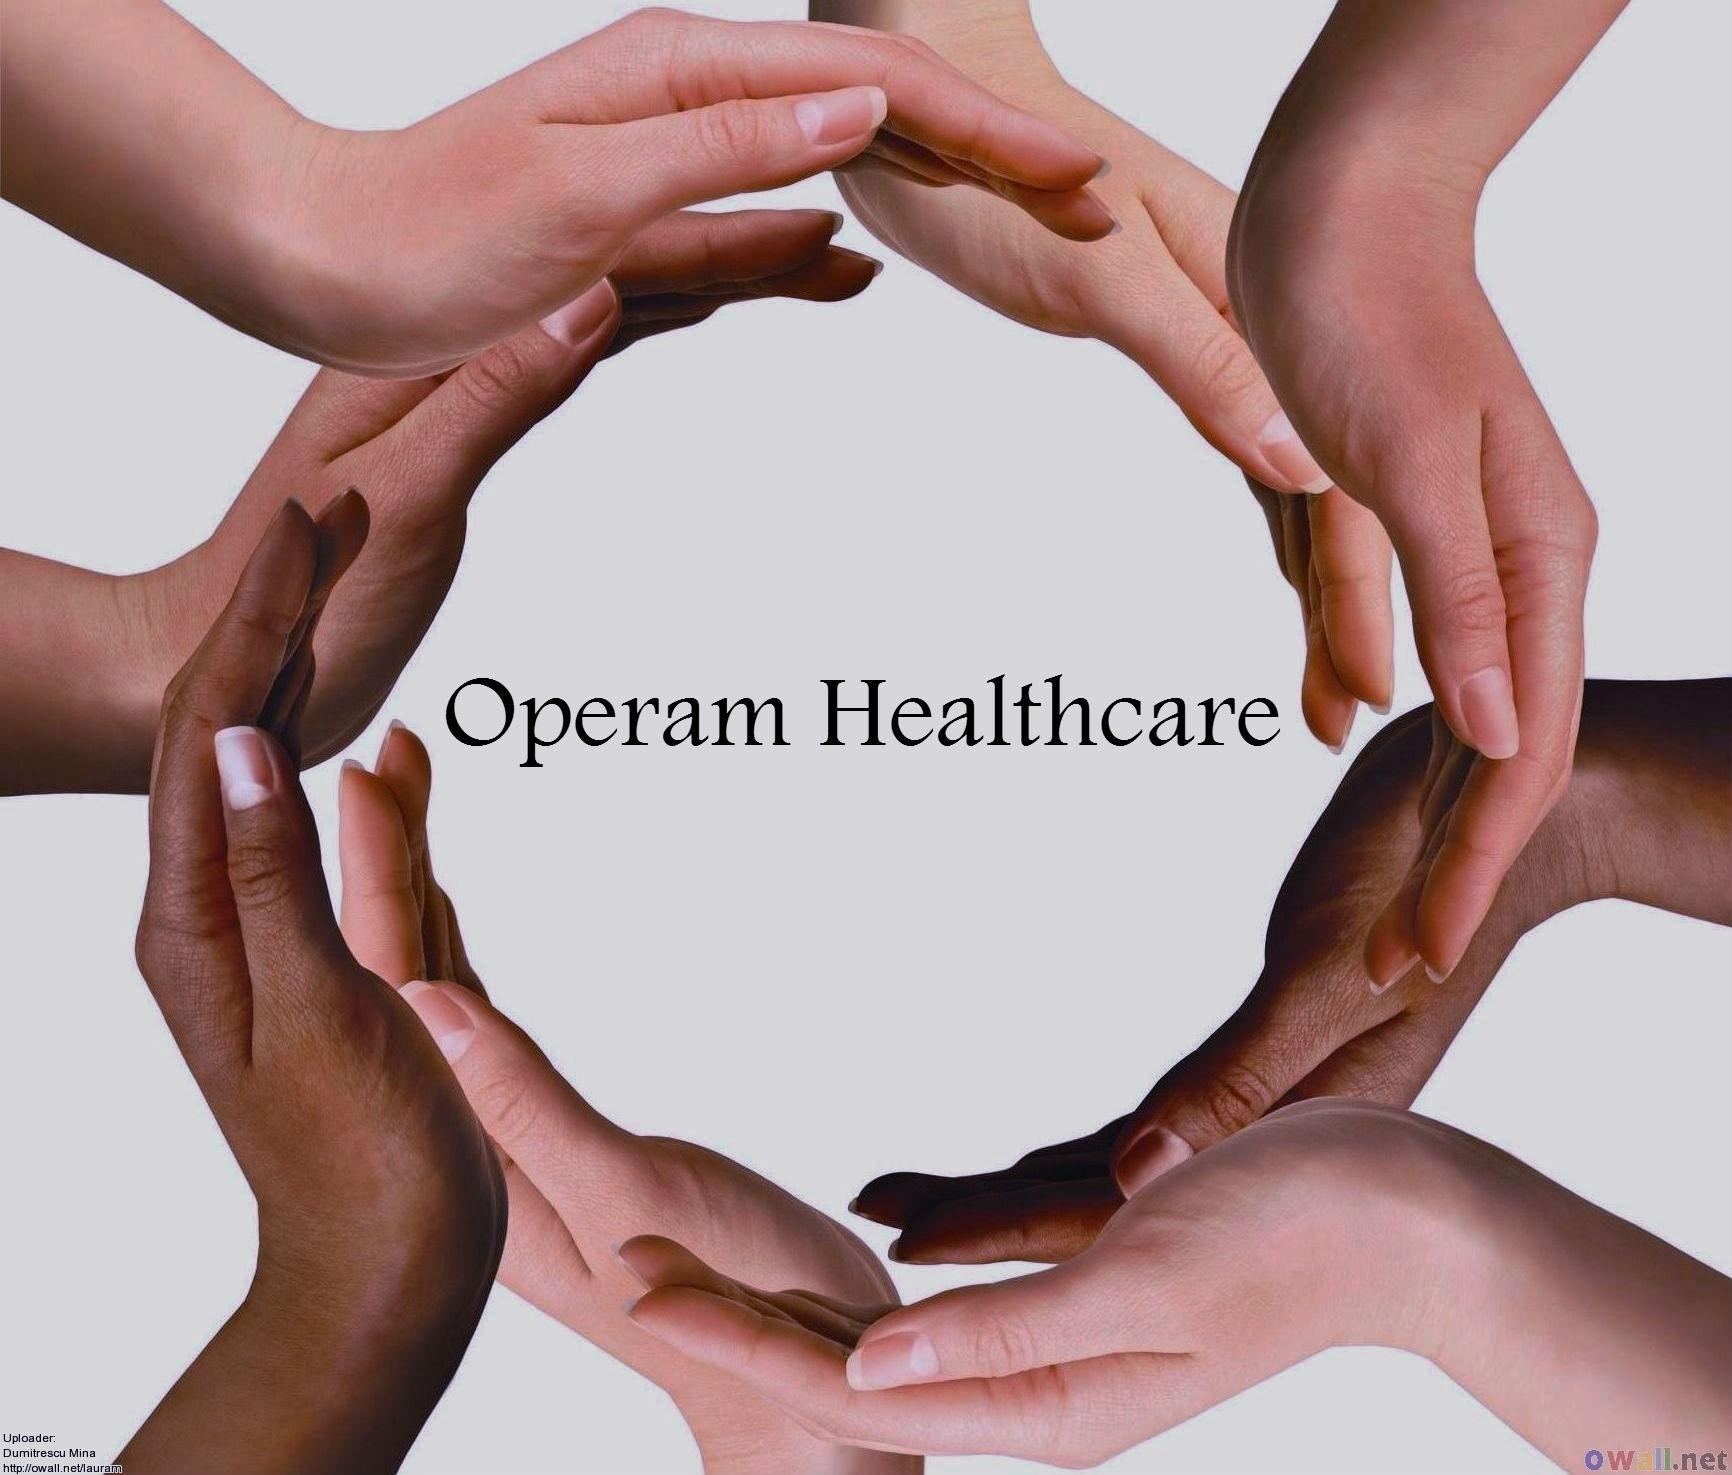 Operam Healthcare